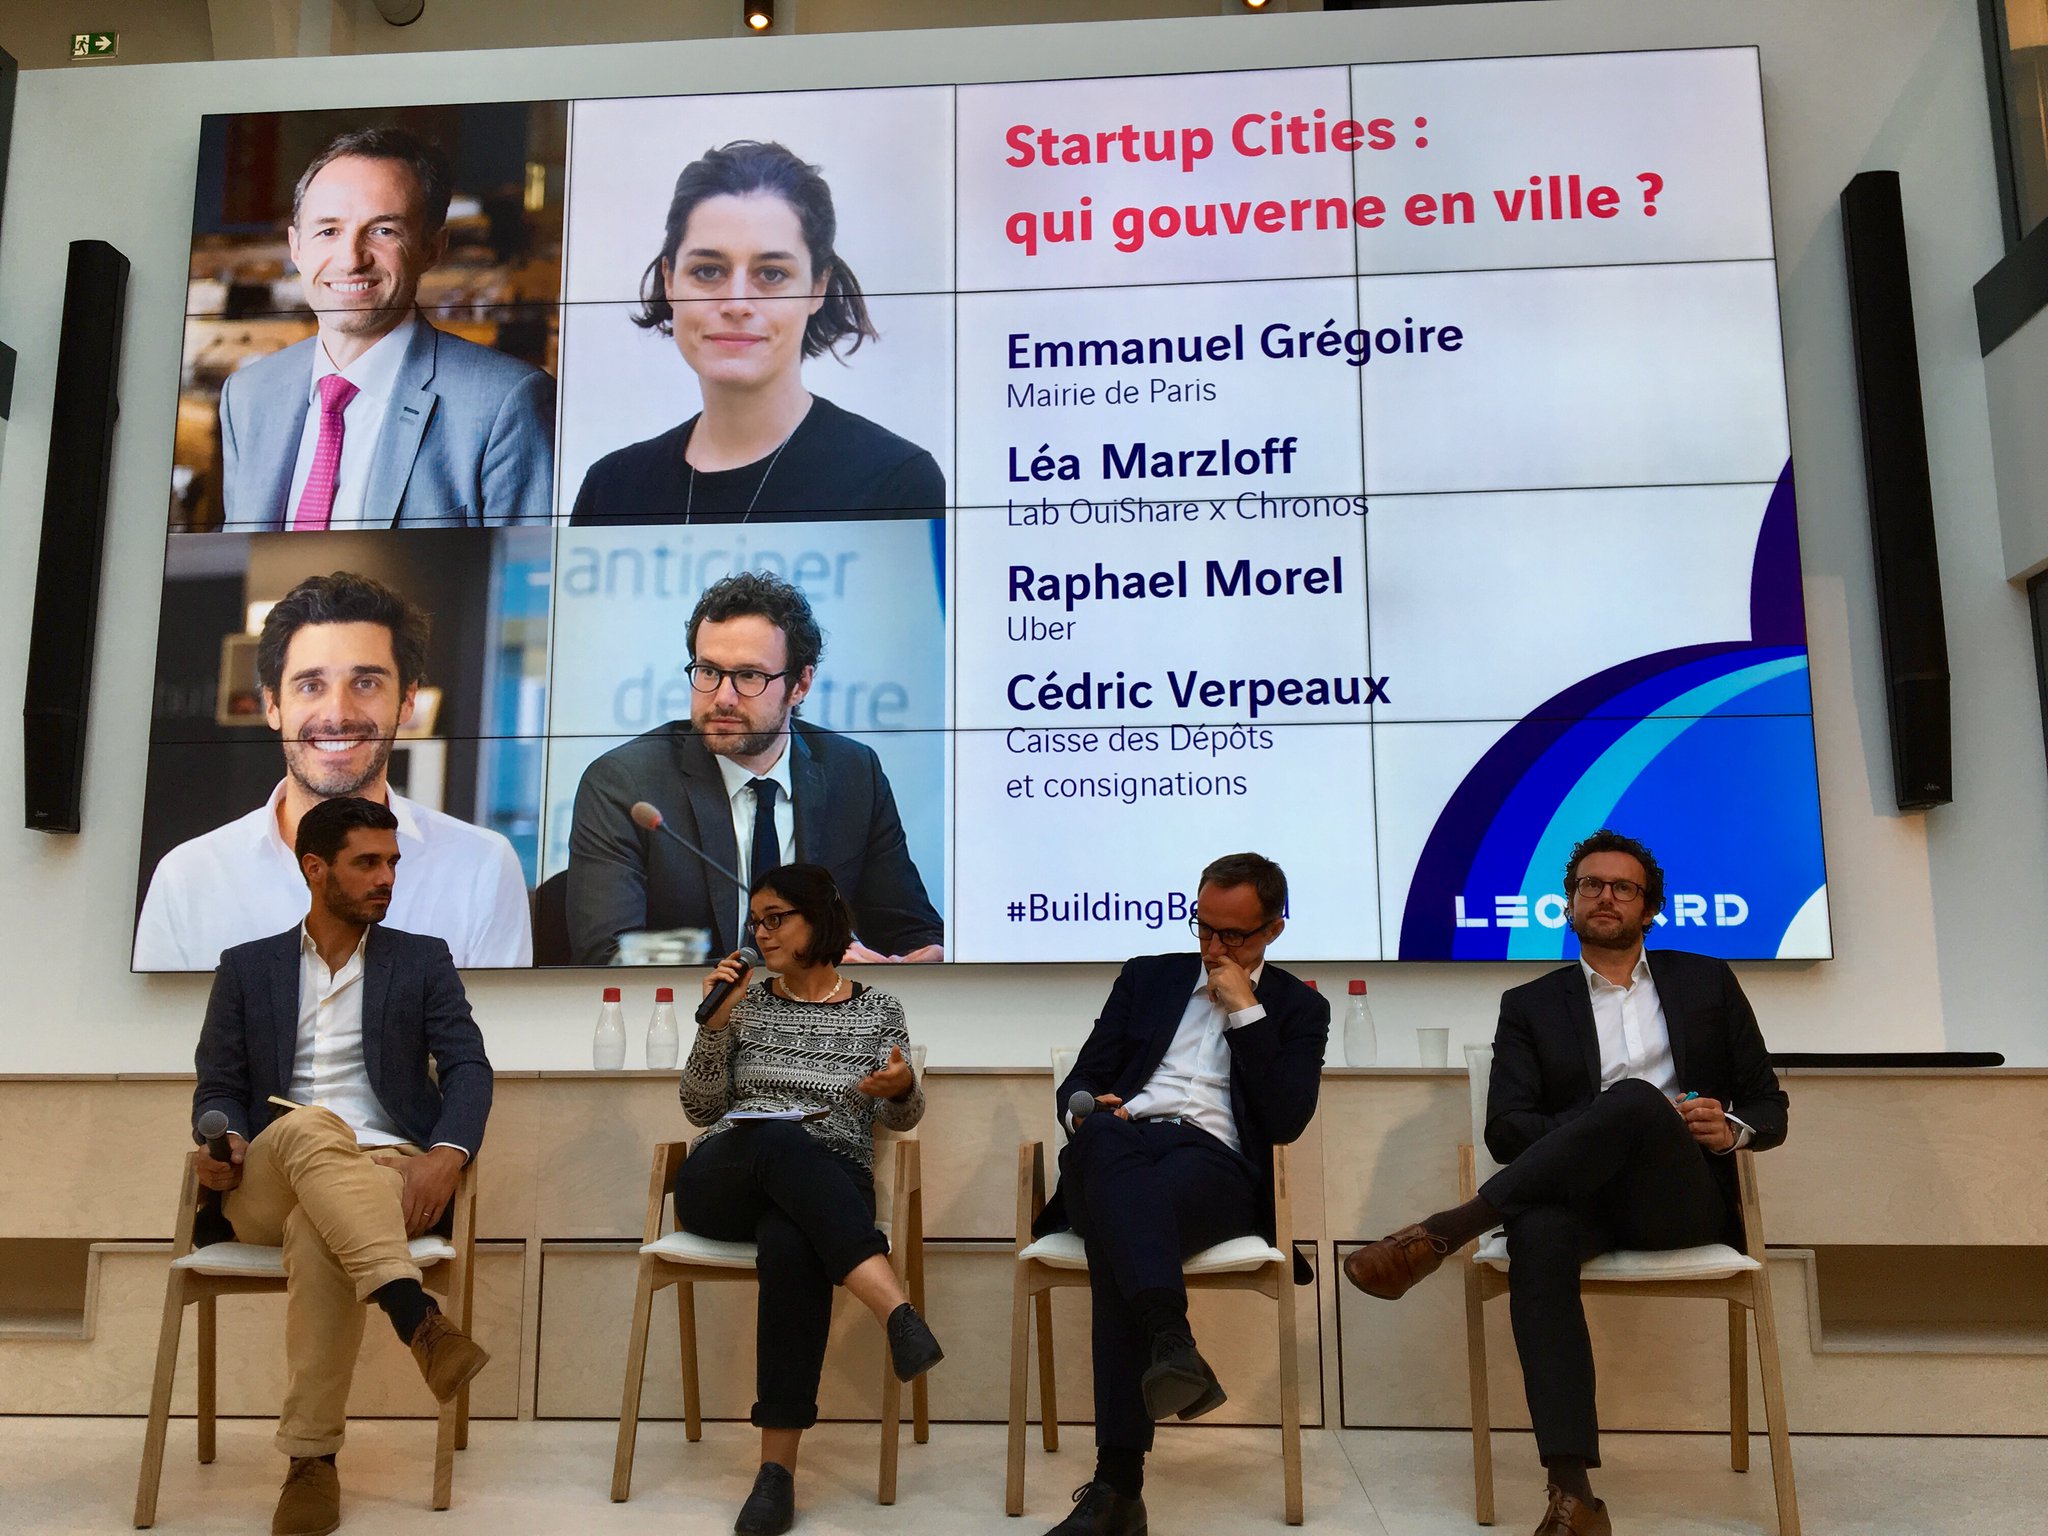 Startup cities : qui gouverne en ville ? avec Emmanuel Grégoire, Léa Marzloff, Raphael Morel et Cédric Verpeaux